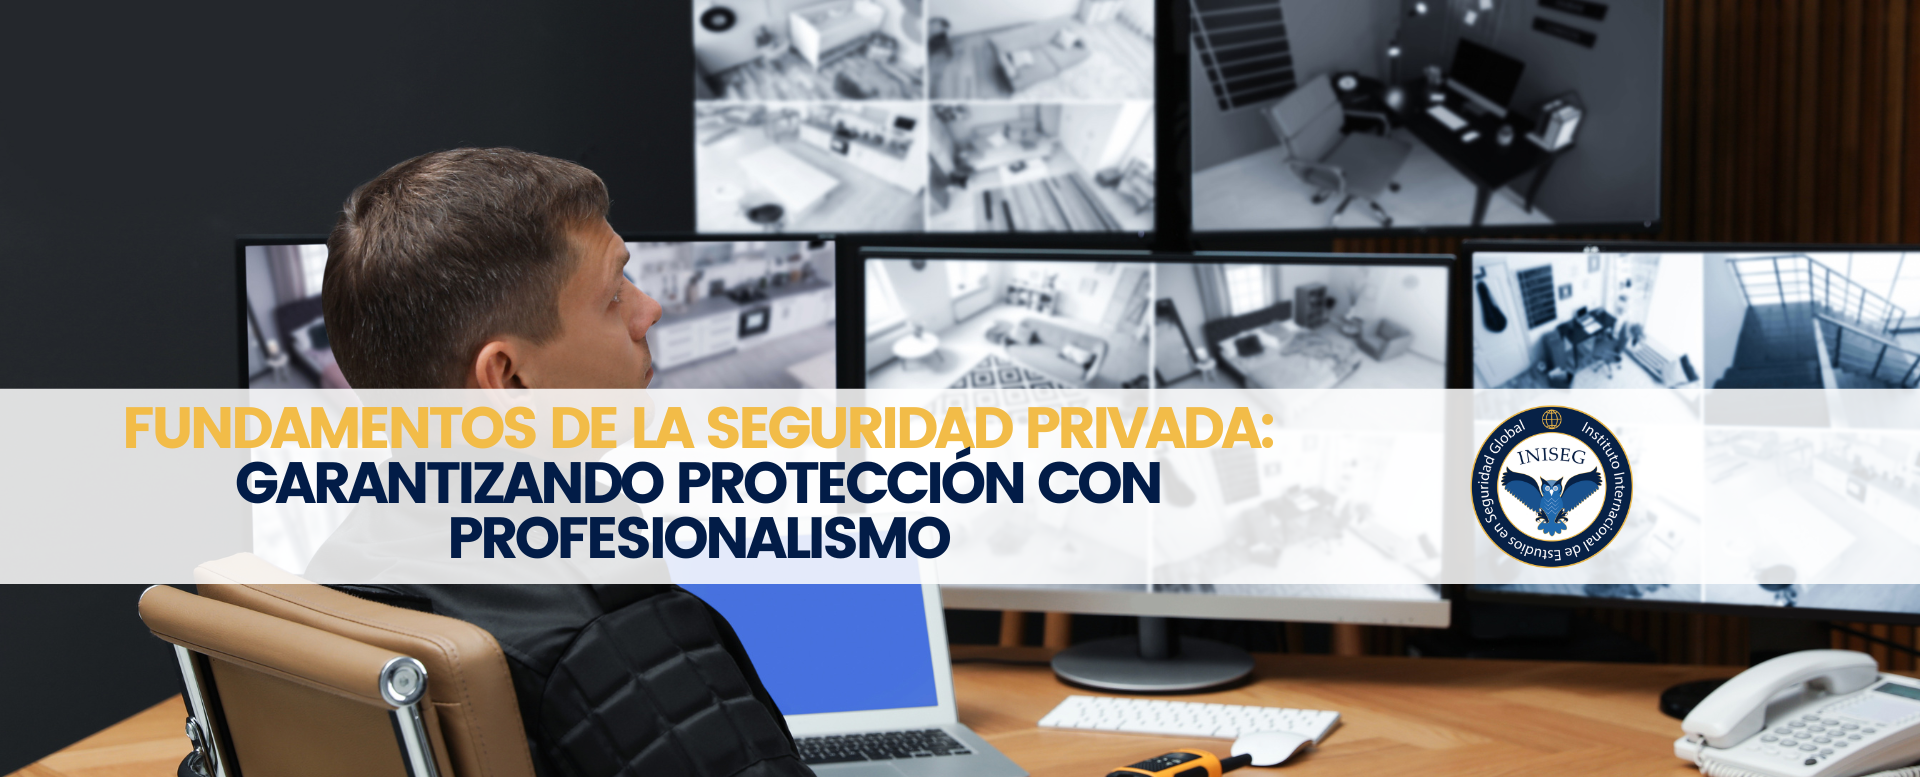 Fundamentos de la Seguridad Privada: Garantizando Protección con Profesionalismo